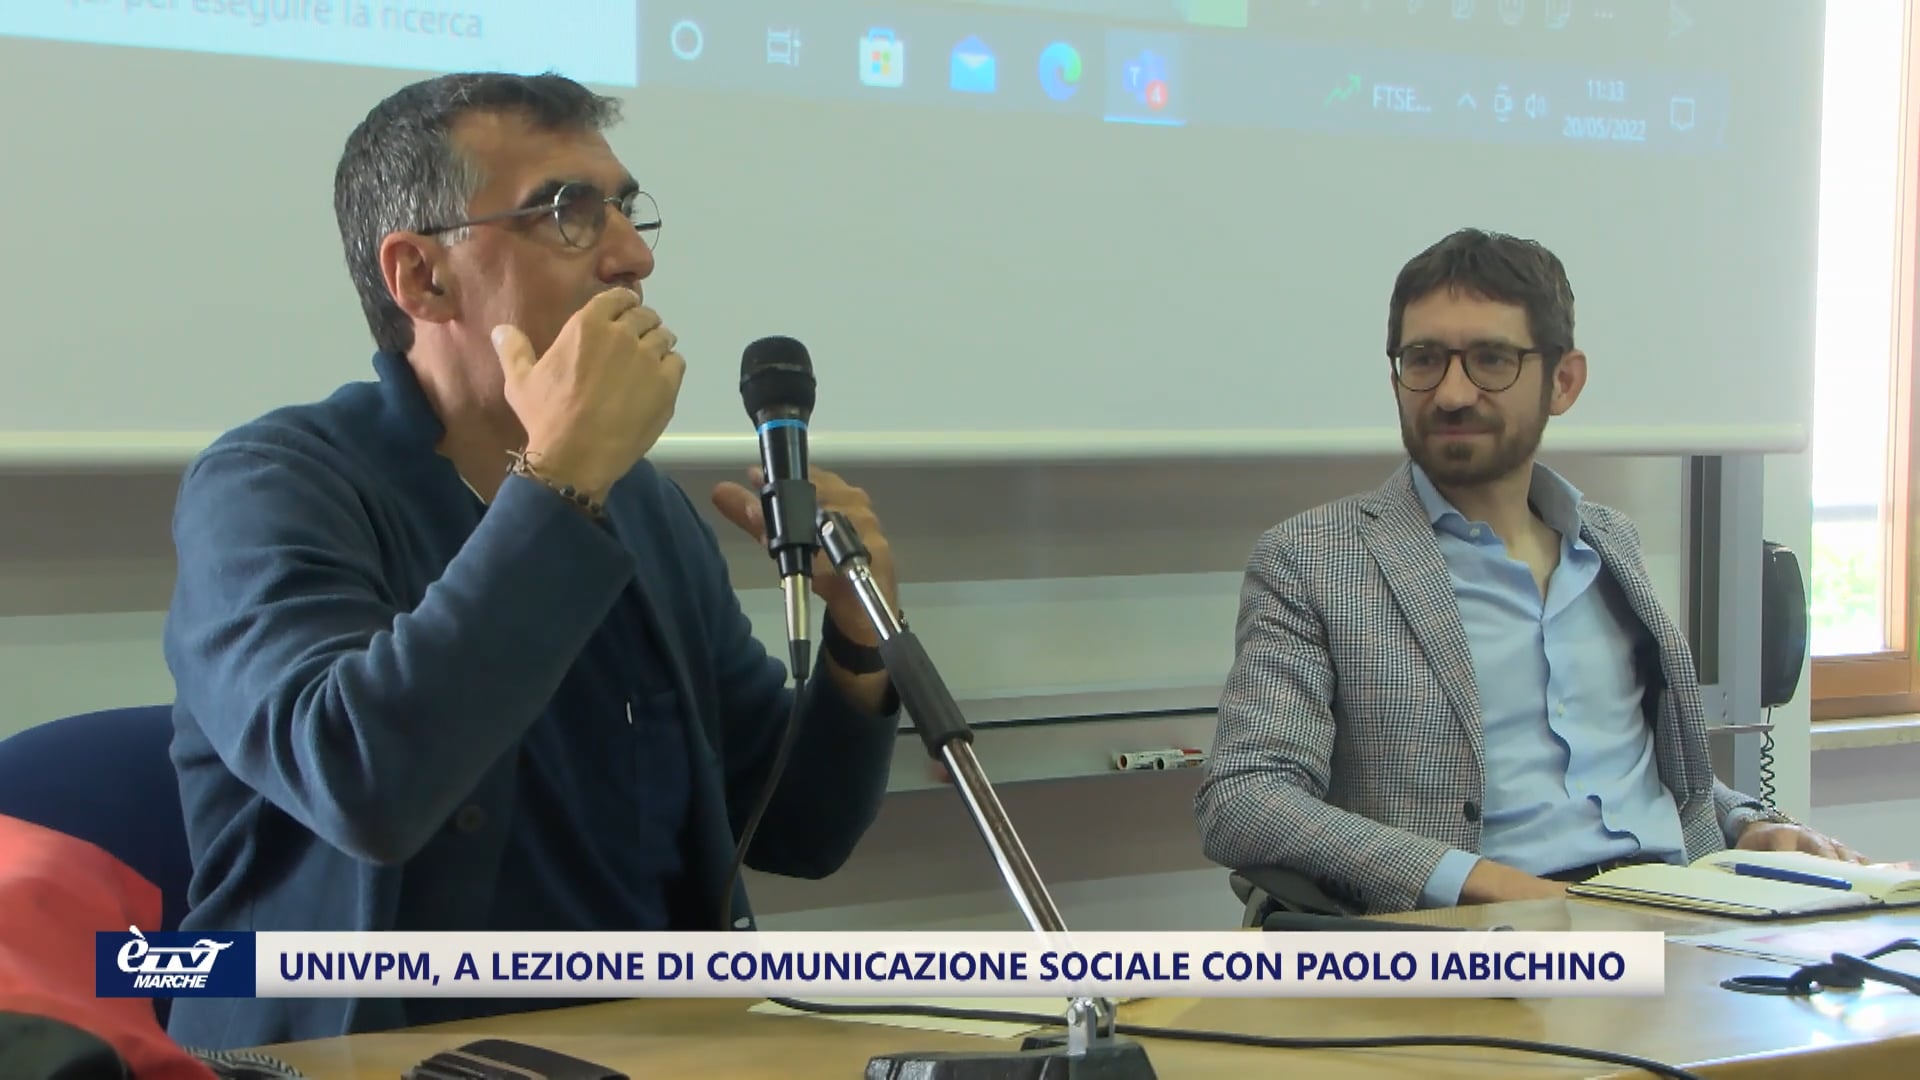 Università Politecnica delle Marche, a lezione di comunicazione con Paolo Iabichino - VIDEO